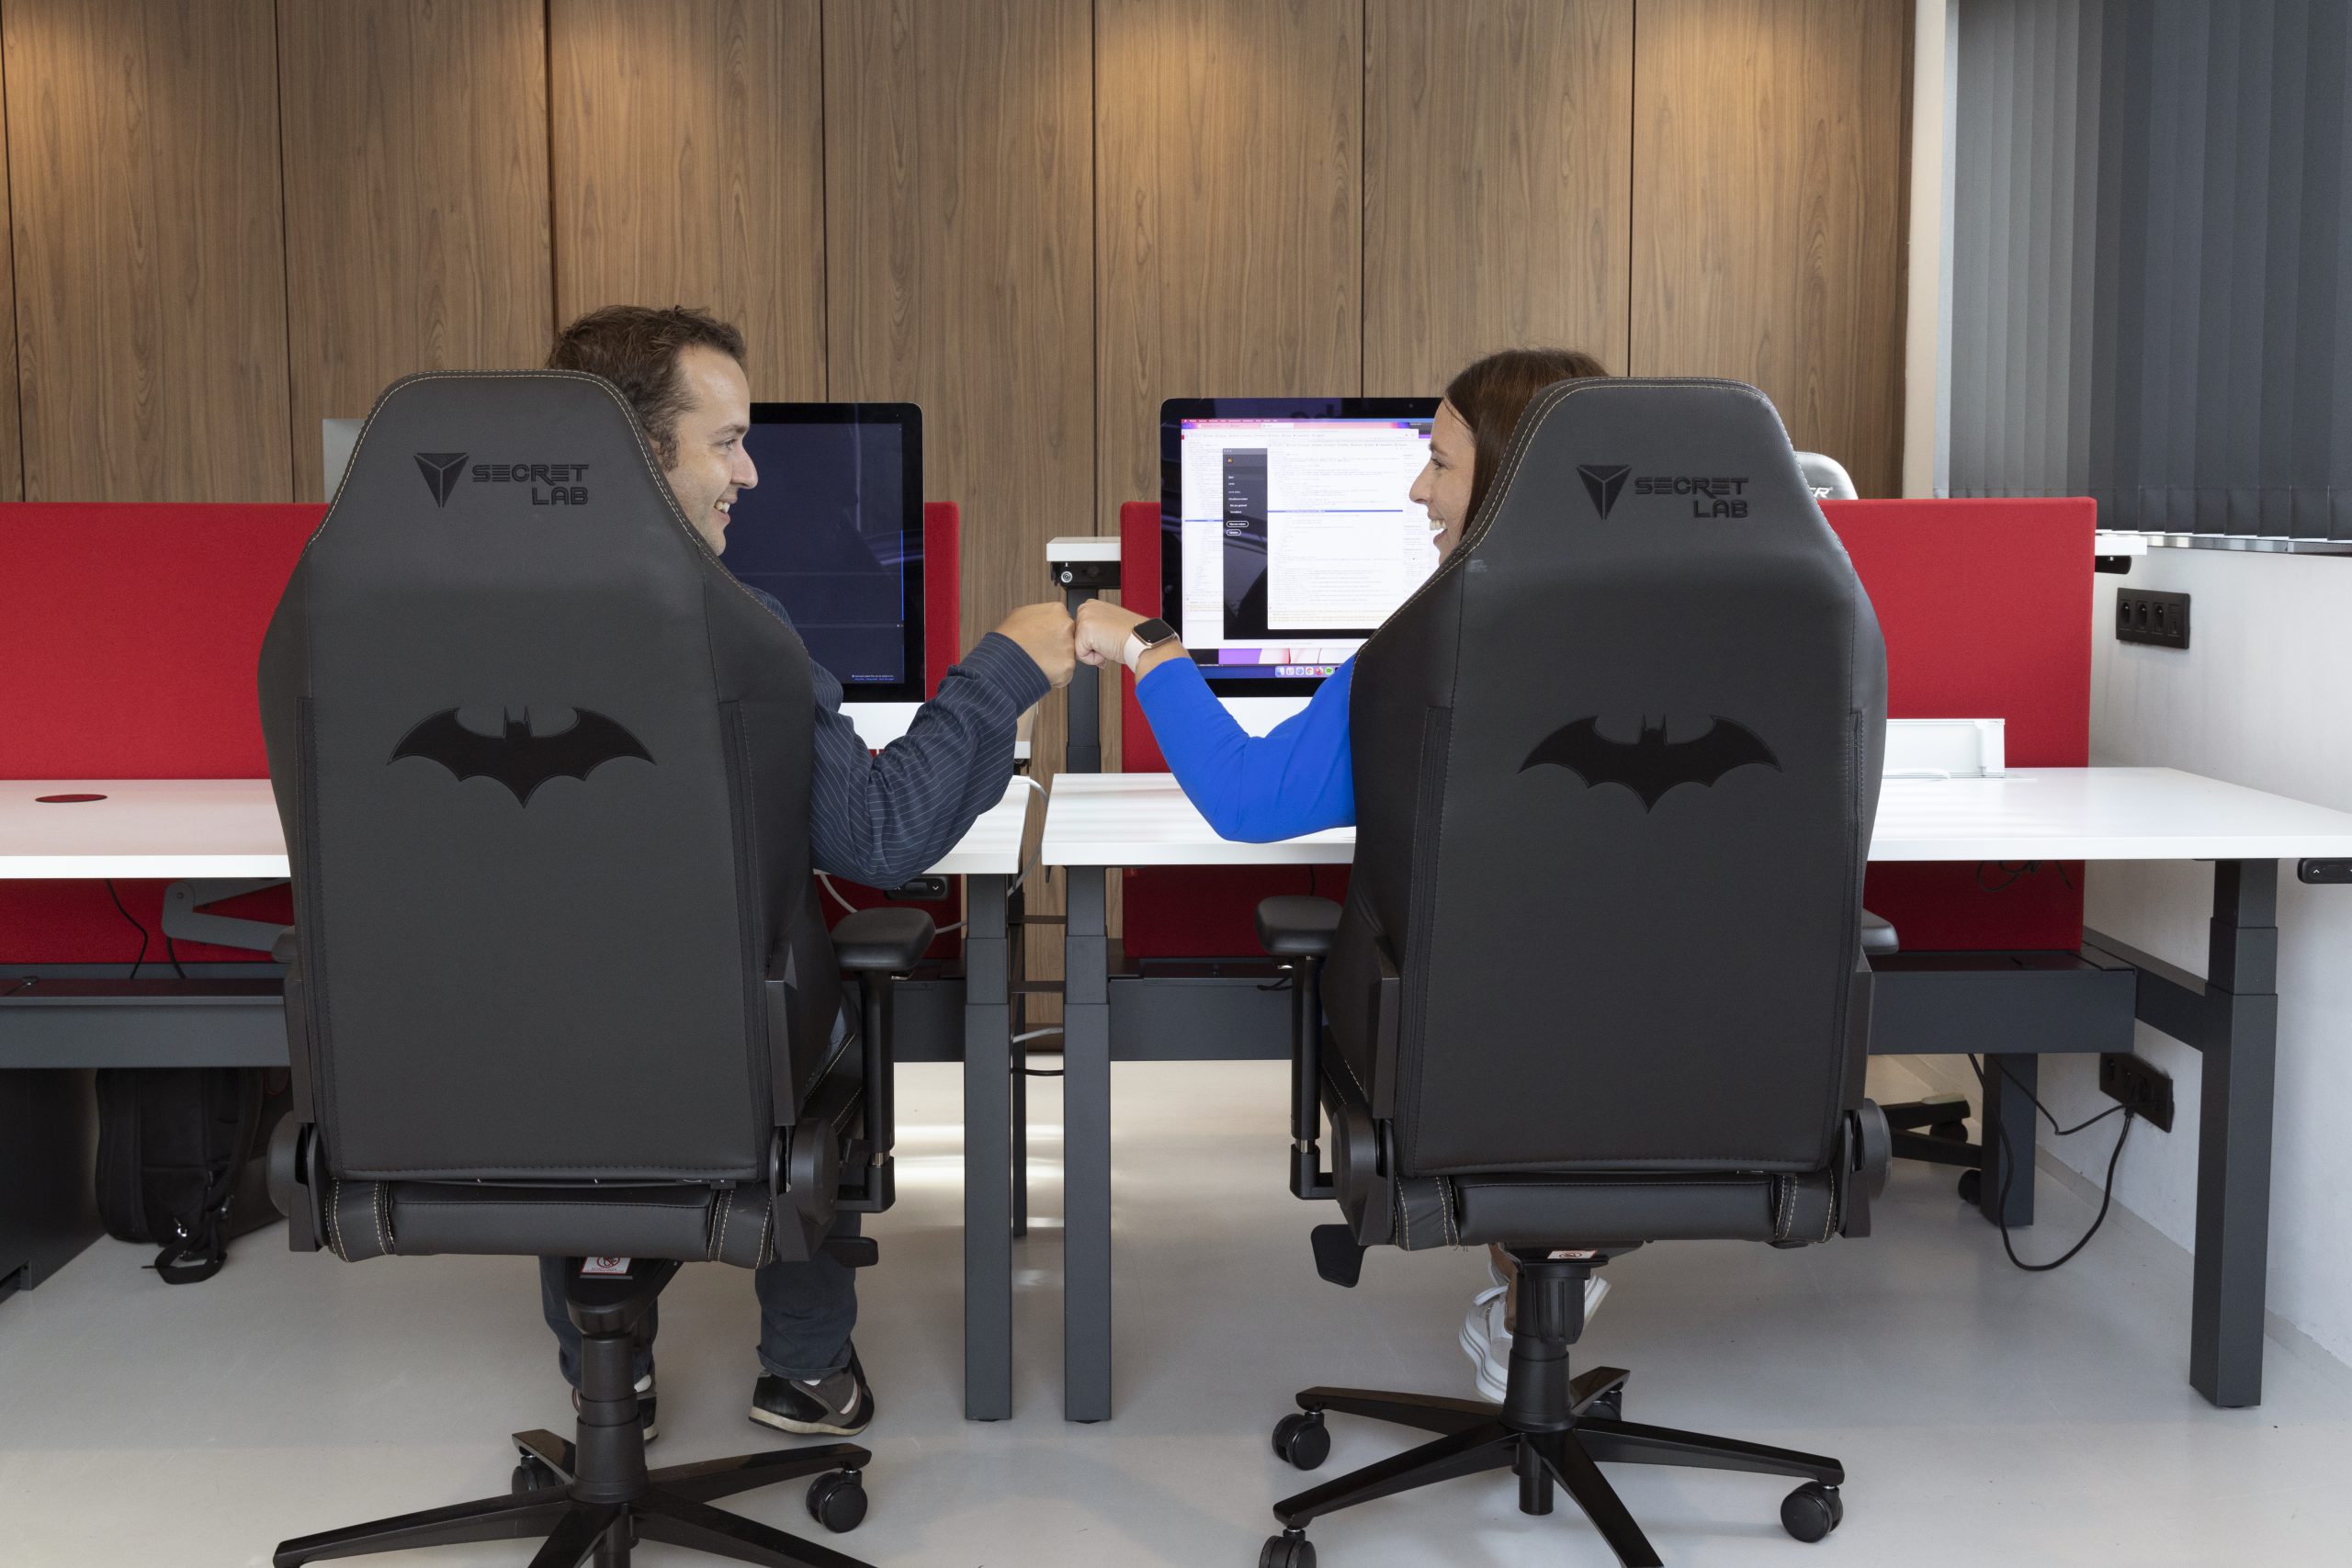 Betrokkenheid op de werkvloer stimuleren? Meet Batman & Robin!